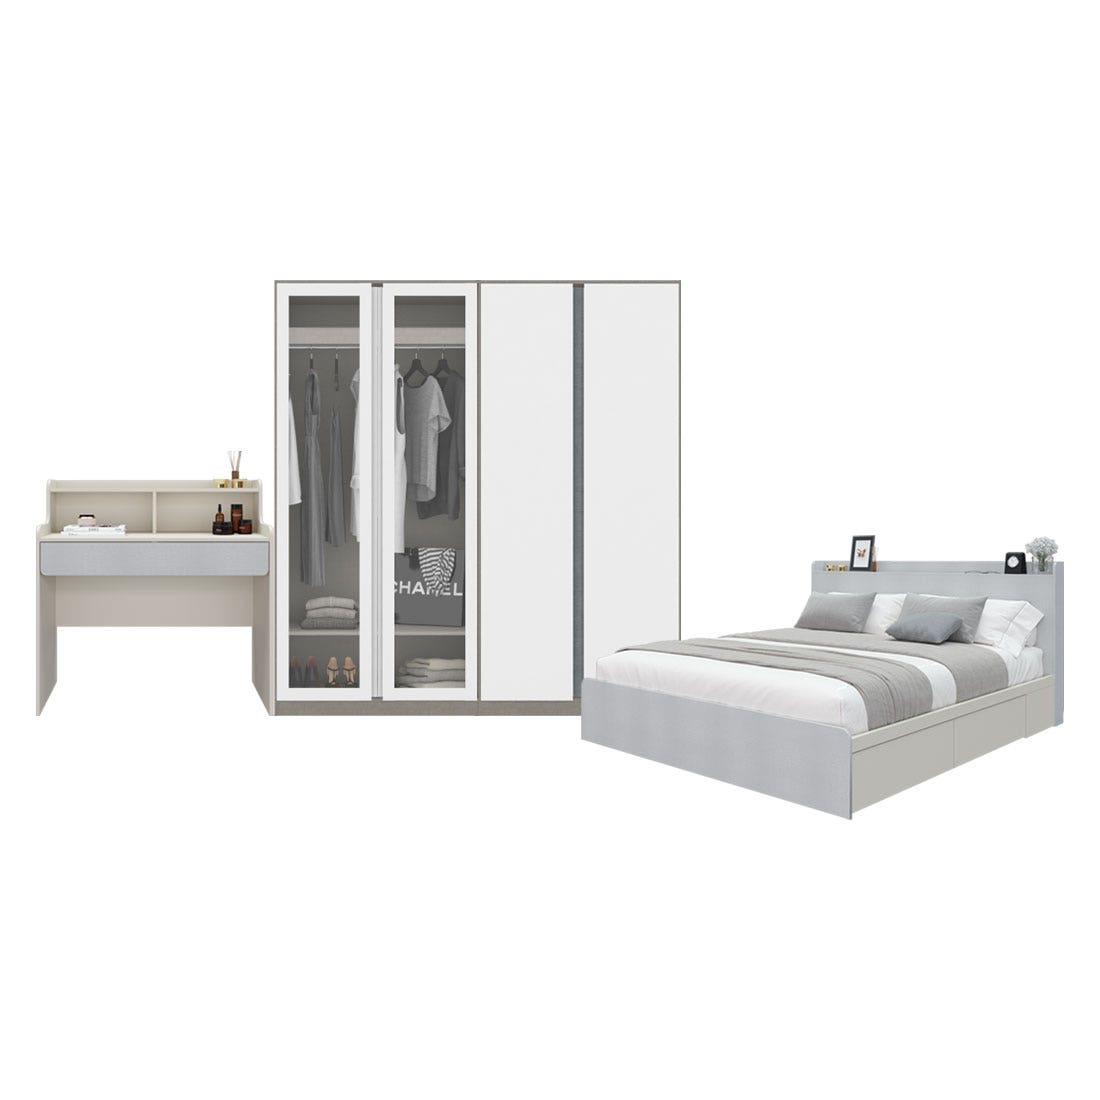 ชุดห้องนอน 5 ฟุต & ตู้ Blox 200 ซม. & โต๊ะเครื่องแป้ง รุ่น Aiko สีขาว01